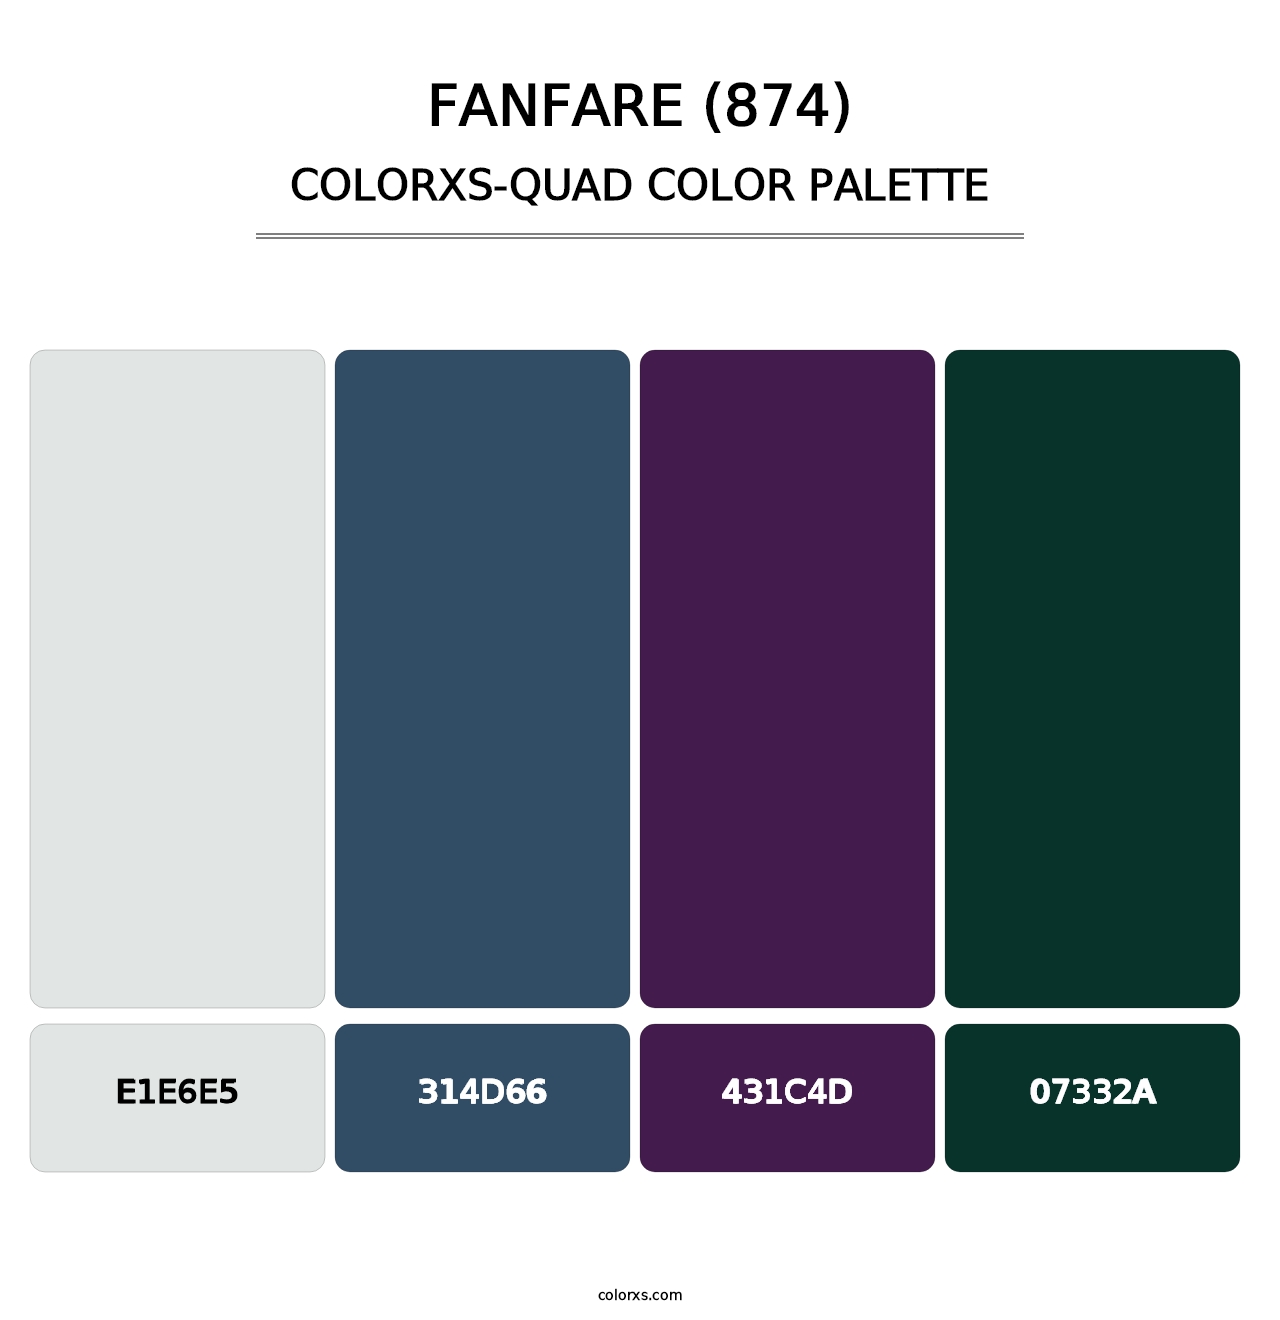 Fanfare (874) - Colorxs Quad Palette